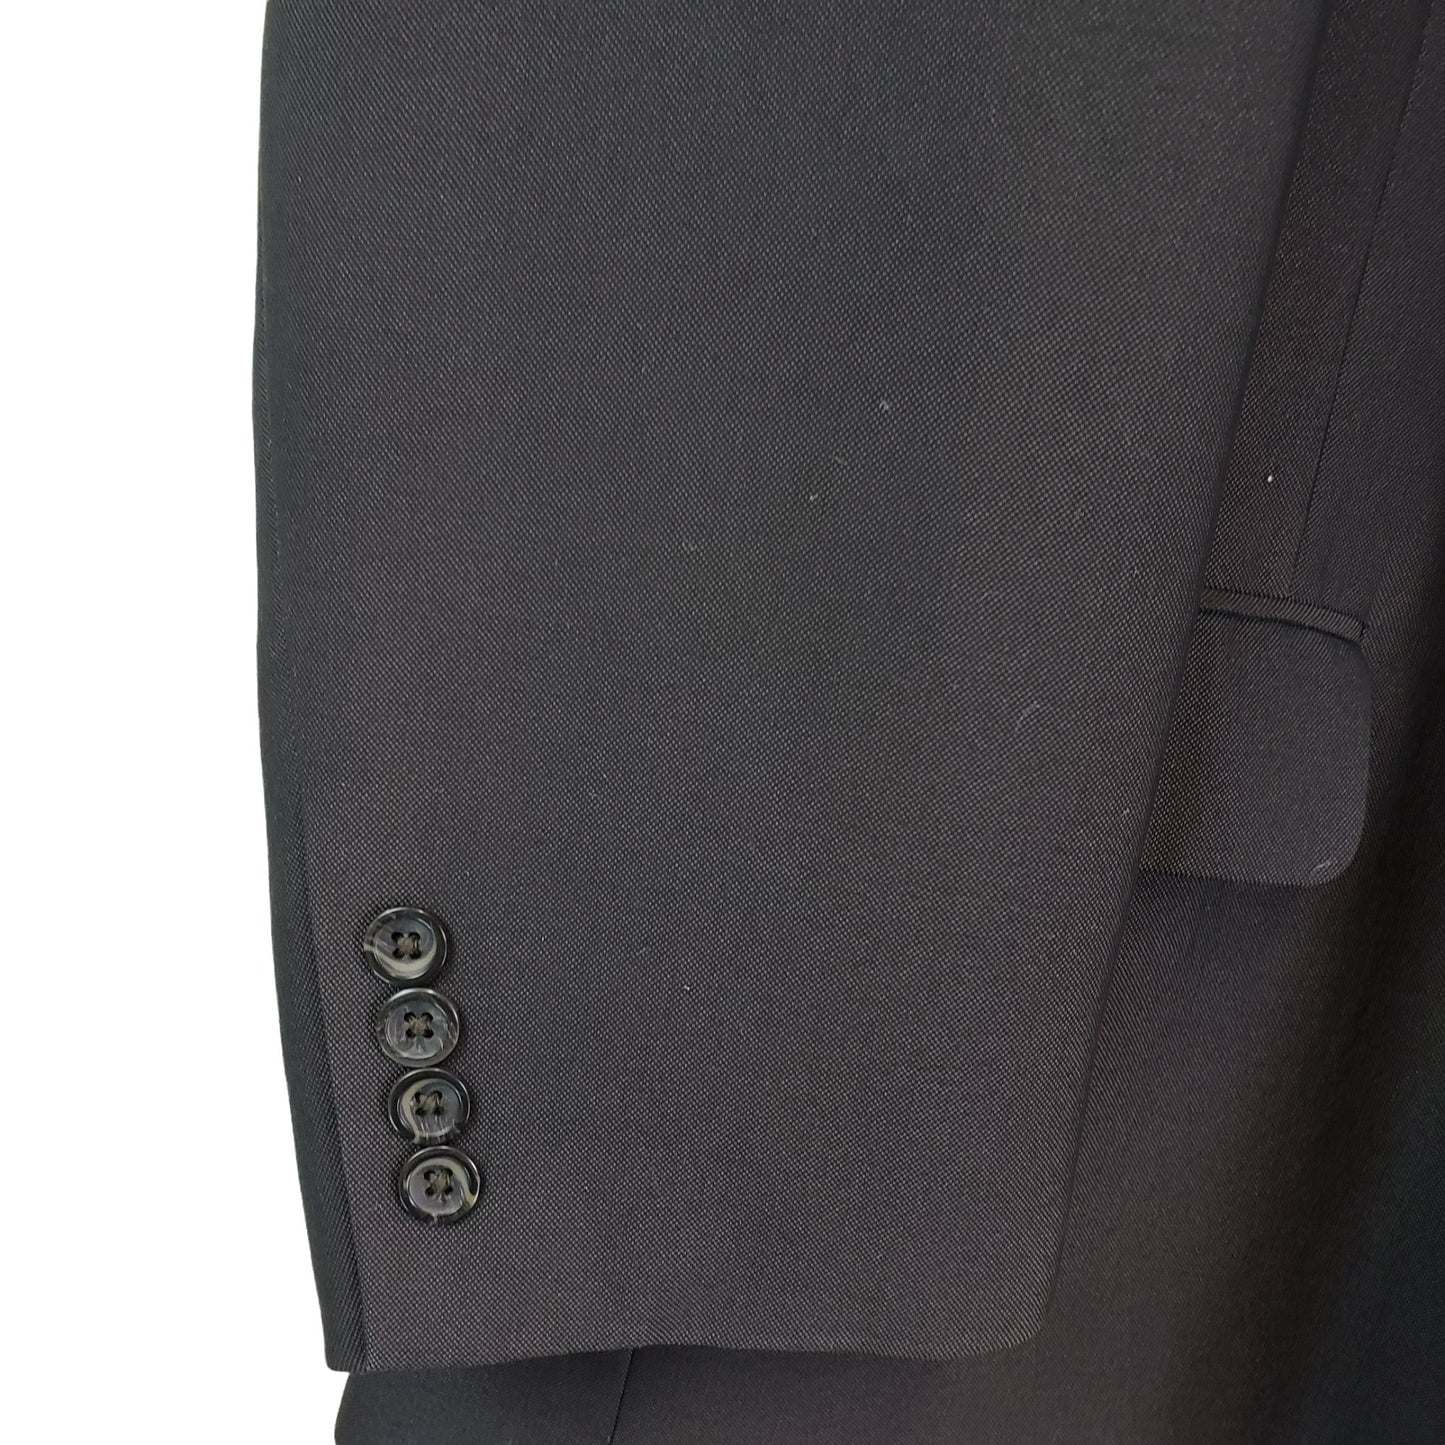 Statements Men's Dark Gray 2 Button Suit Jacket Size 44R